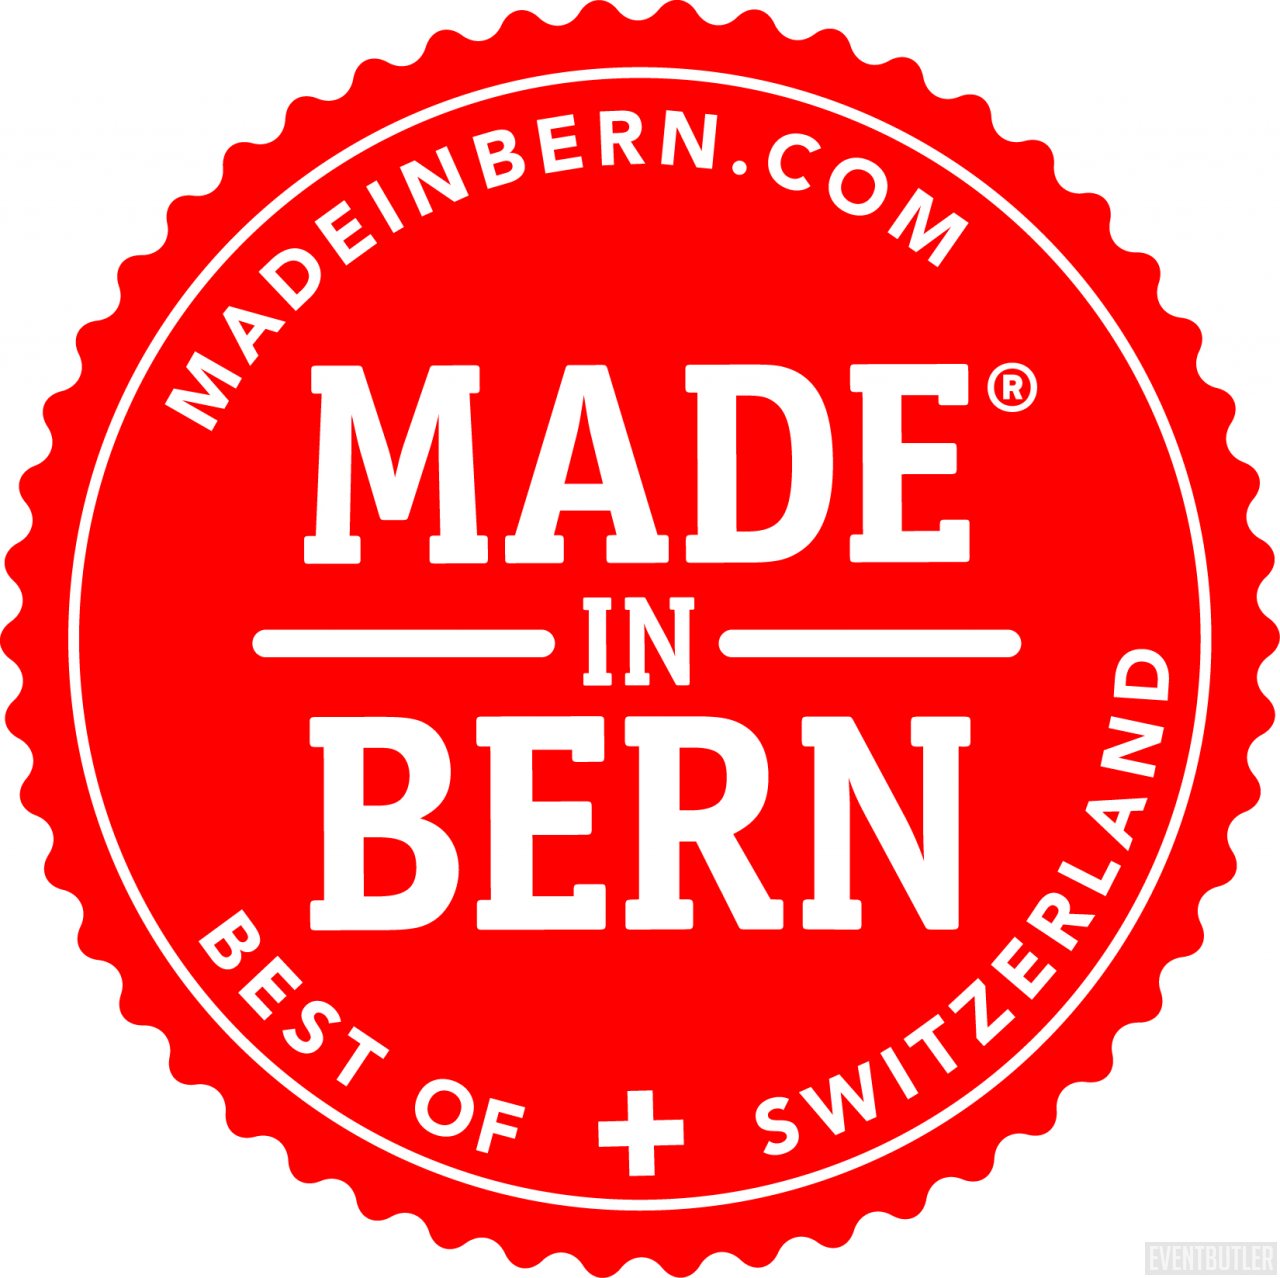 Made in Bern